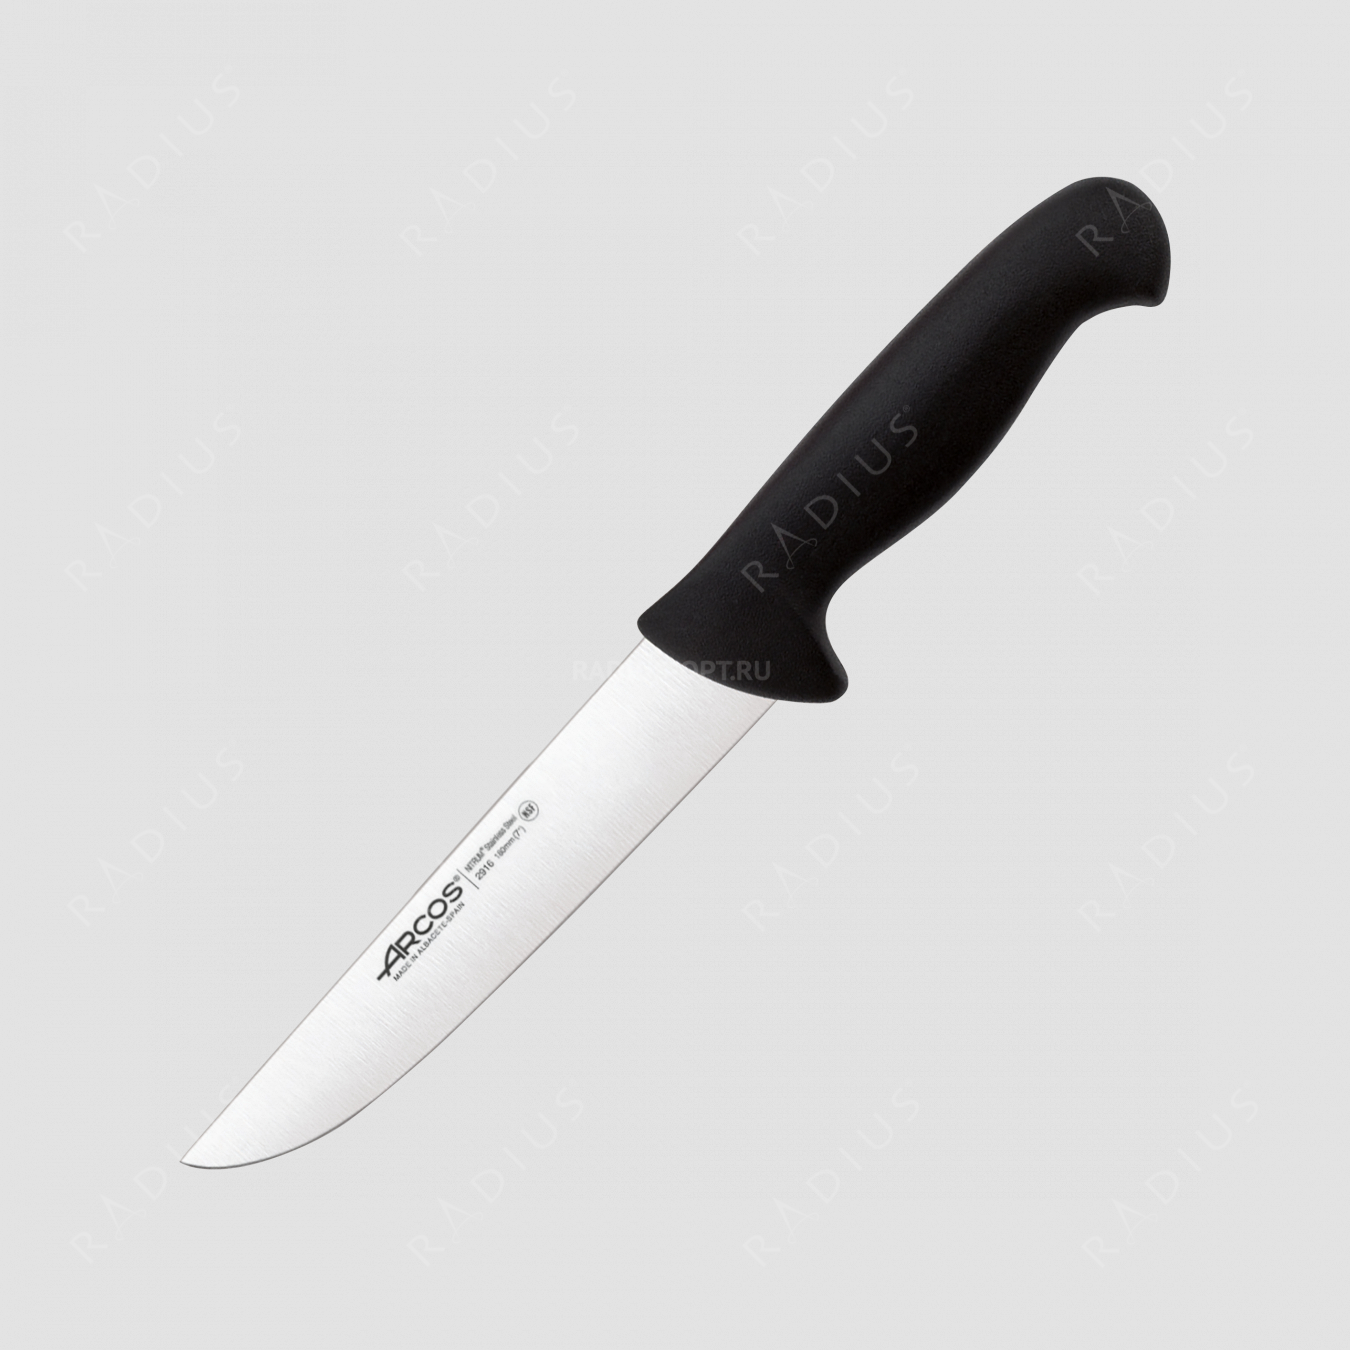 Нож кухонный для разделки 18 см, рукоять черная, серия 2900, ARCOS, Испания